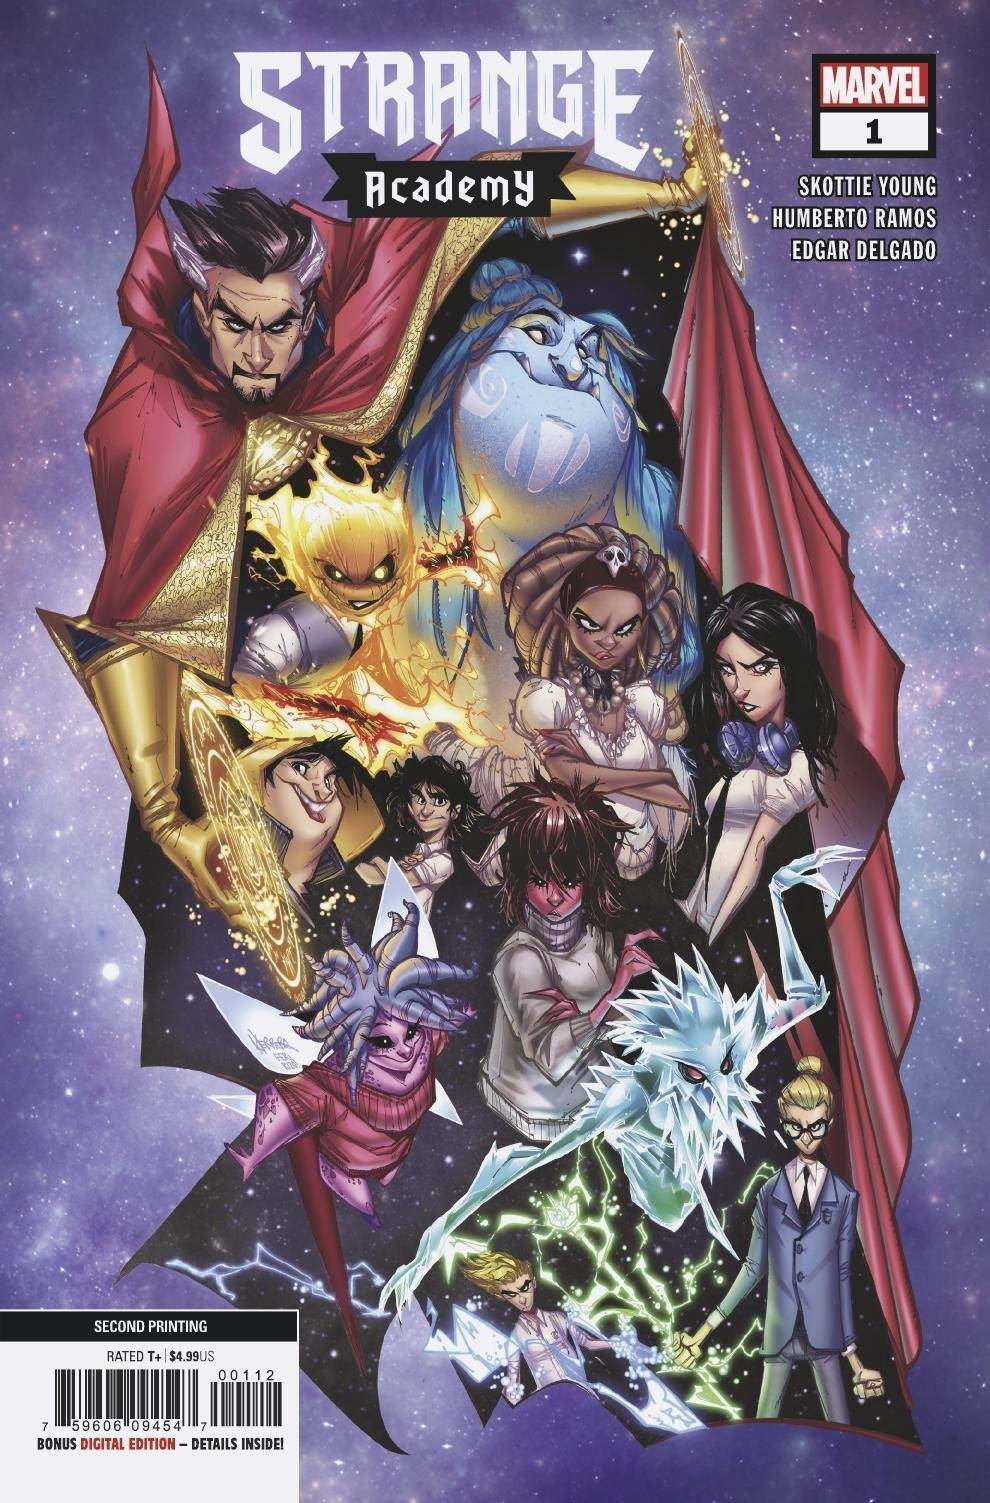 Strange Academy 1,2,3,4,5,6,7,8,9,10,11,13,17, 18 (U Pick) Marvel Comics NM